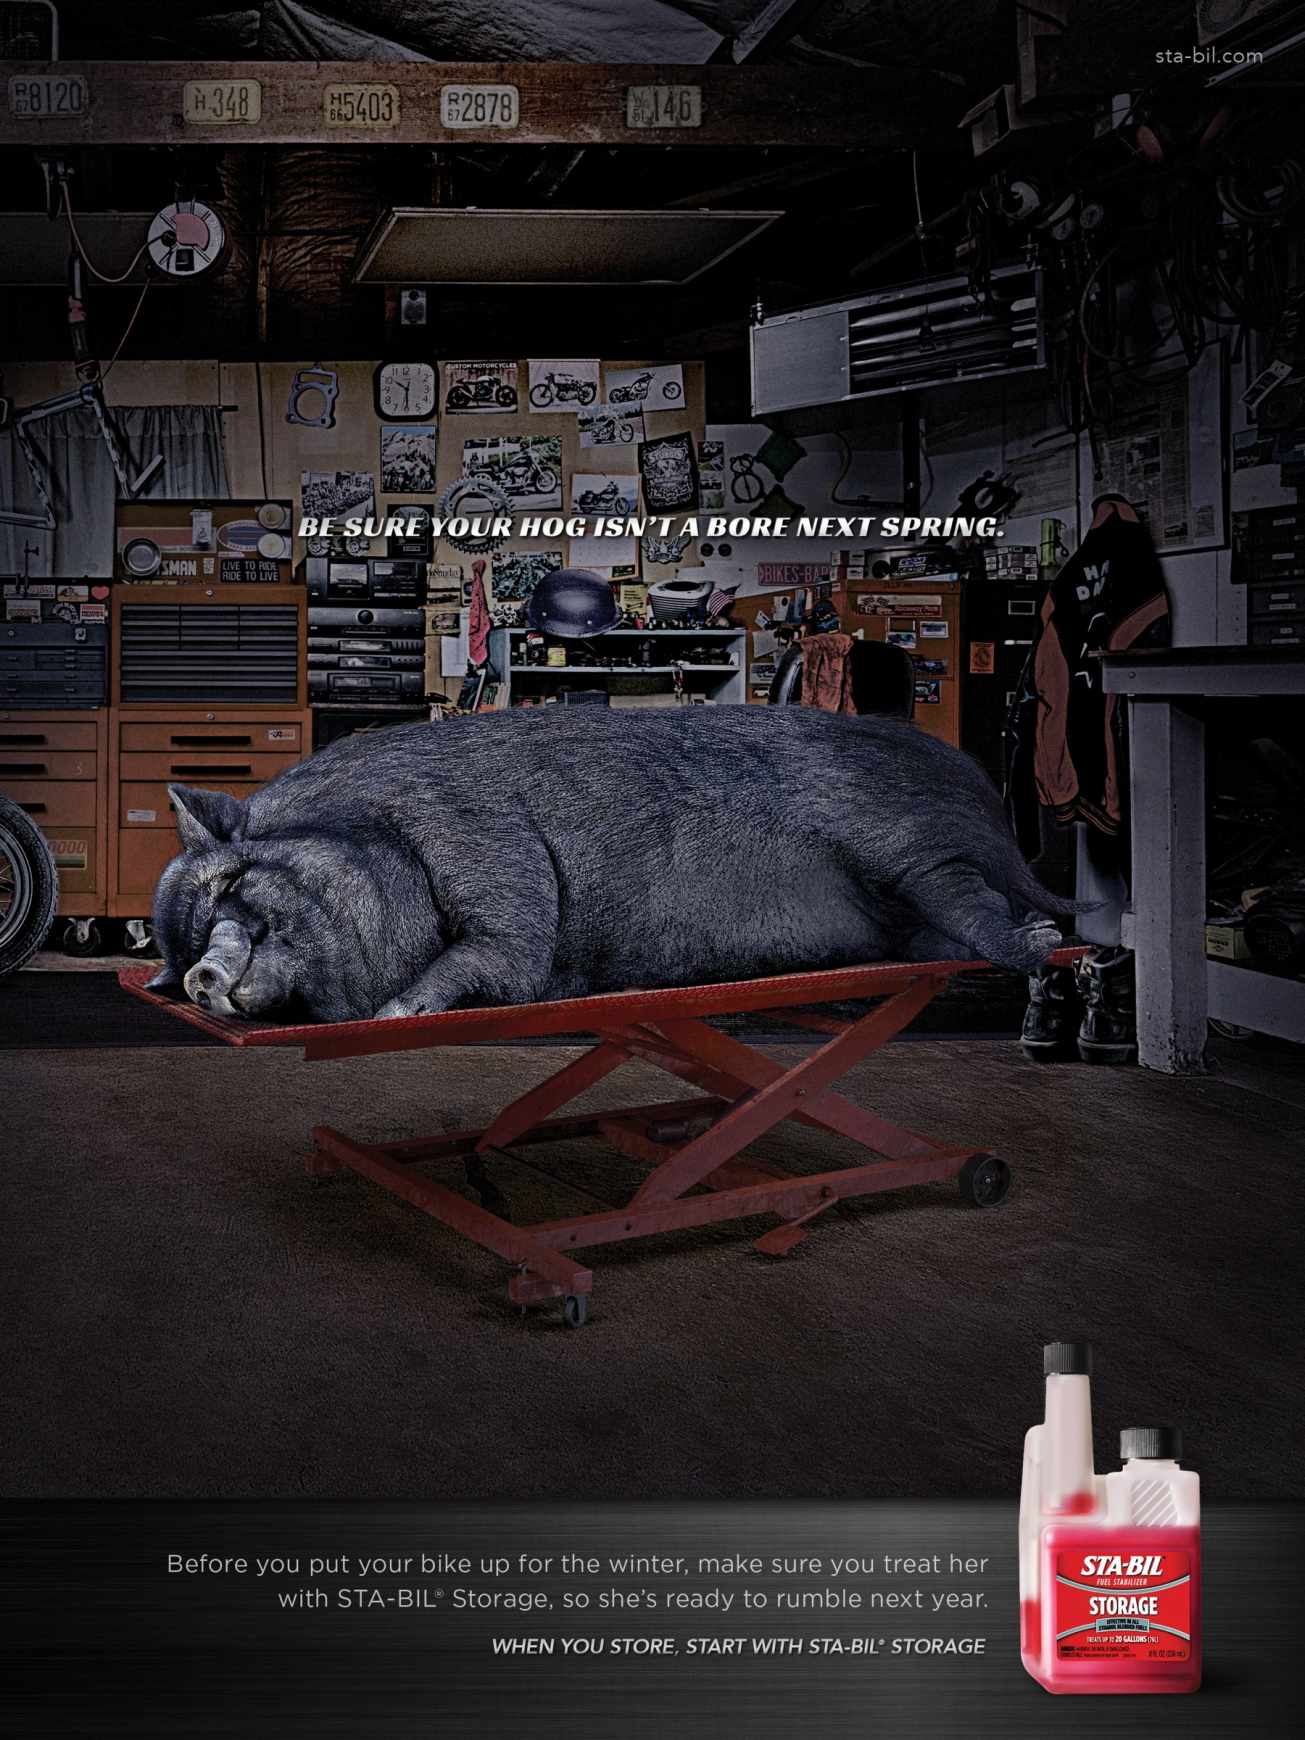 汽车用品广告——Sta-Bil汽油稳定剂汽车用品平面广告创意设计-猪篇